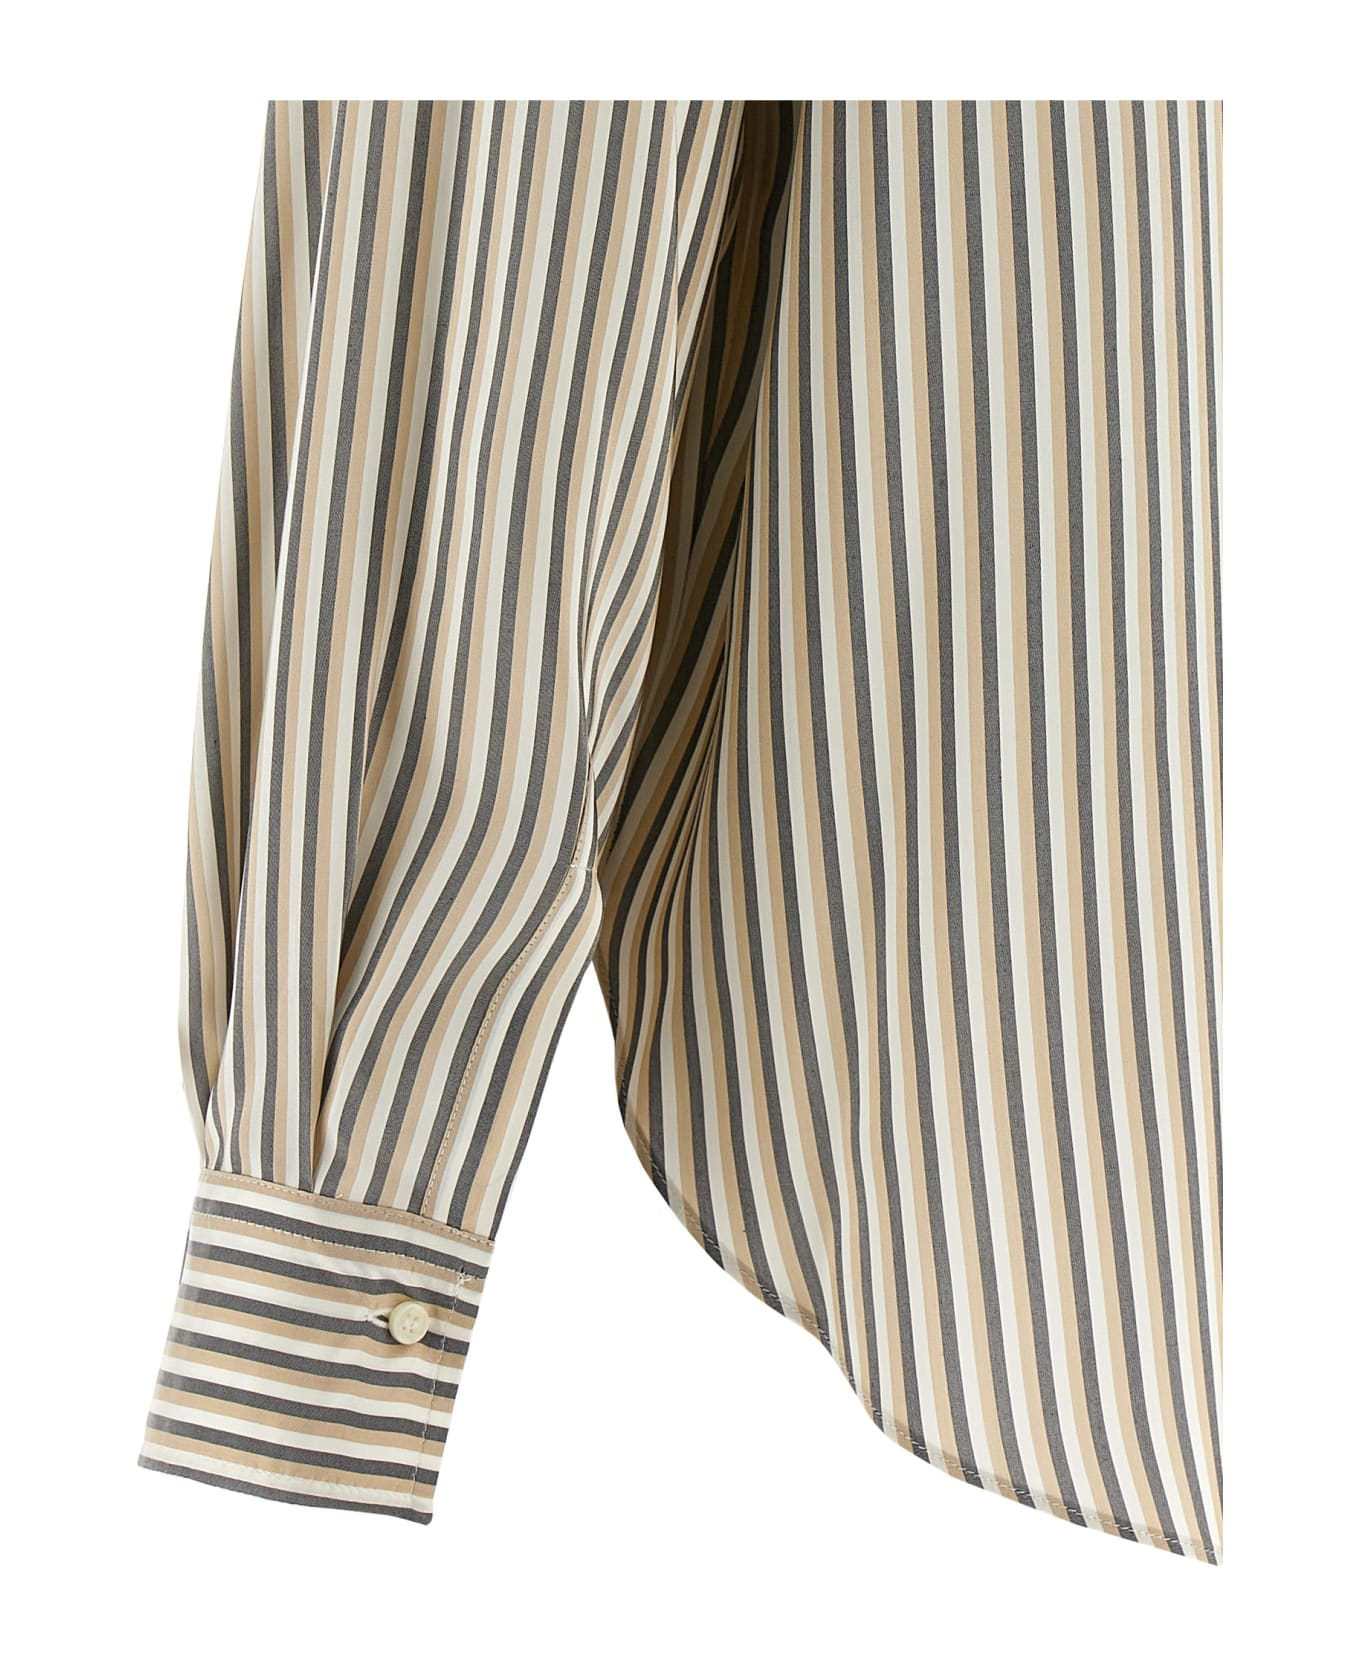 Brunello Cucinelli Striped Shirt - Multicolor